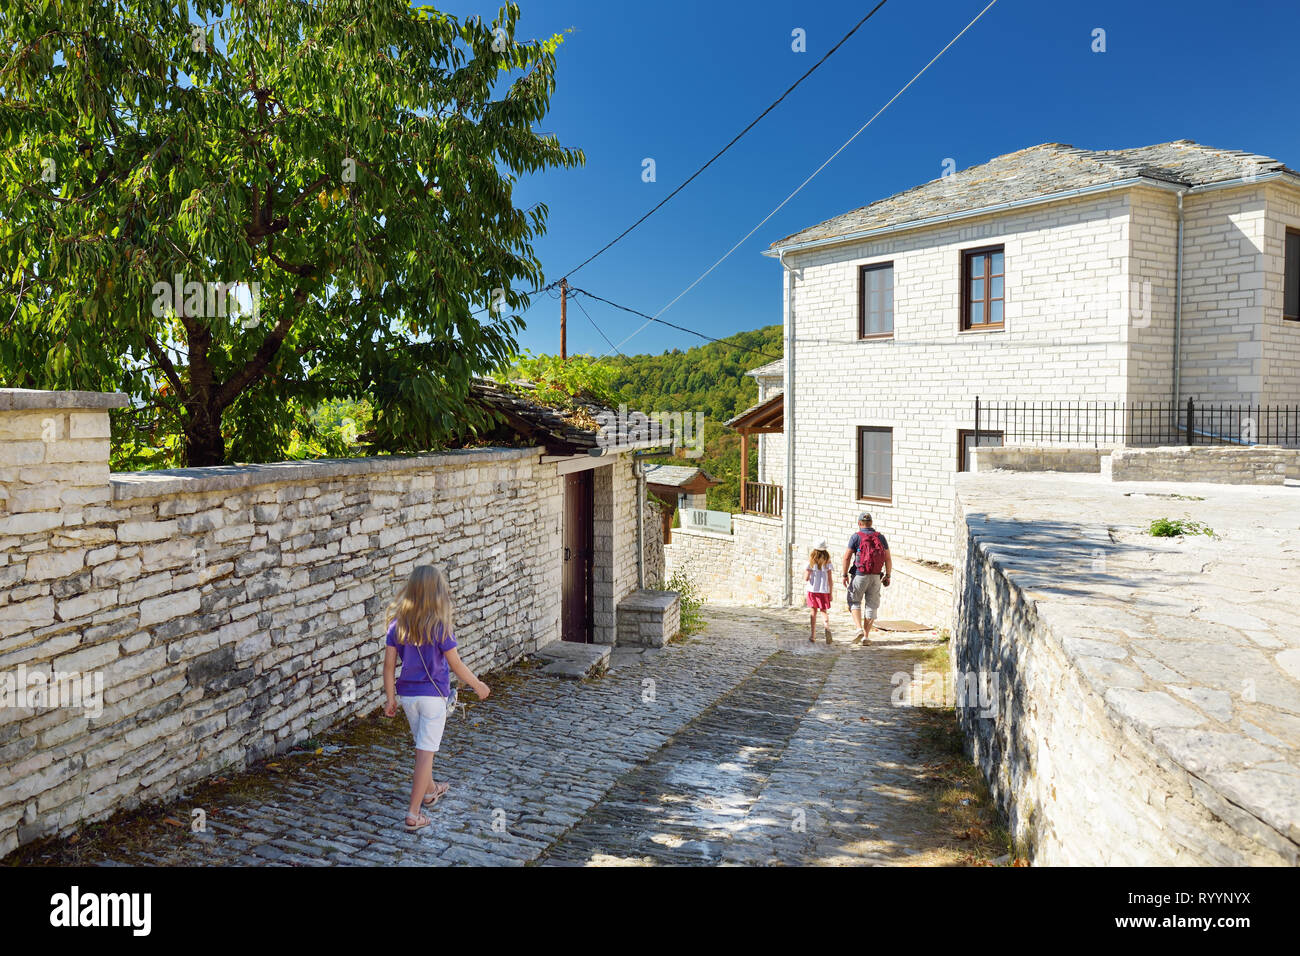 Il padre e i ragazzi ad esplorare Monodendri village con i suoi tradizionali costruzioni in pietra e camminamenti in pietra, Zagoria area, regione Epiro, il nord-ovest Foto Stock